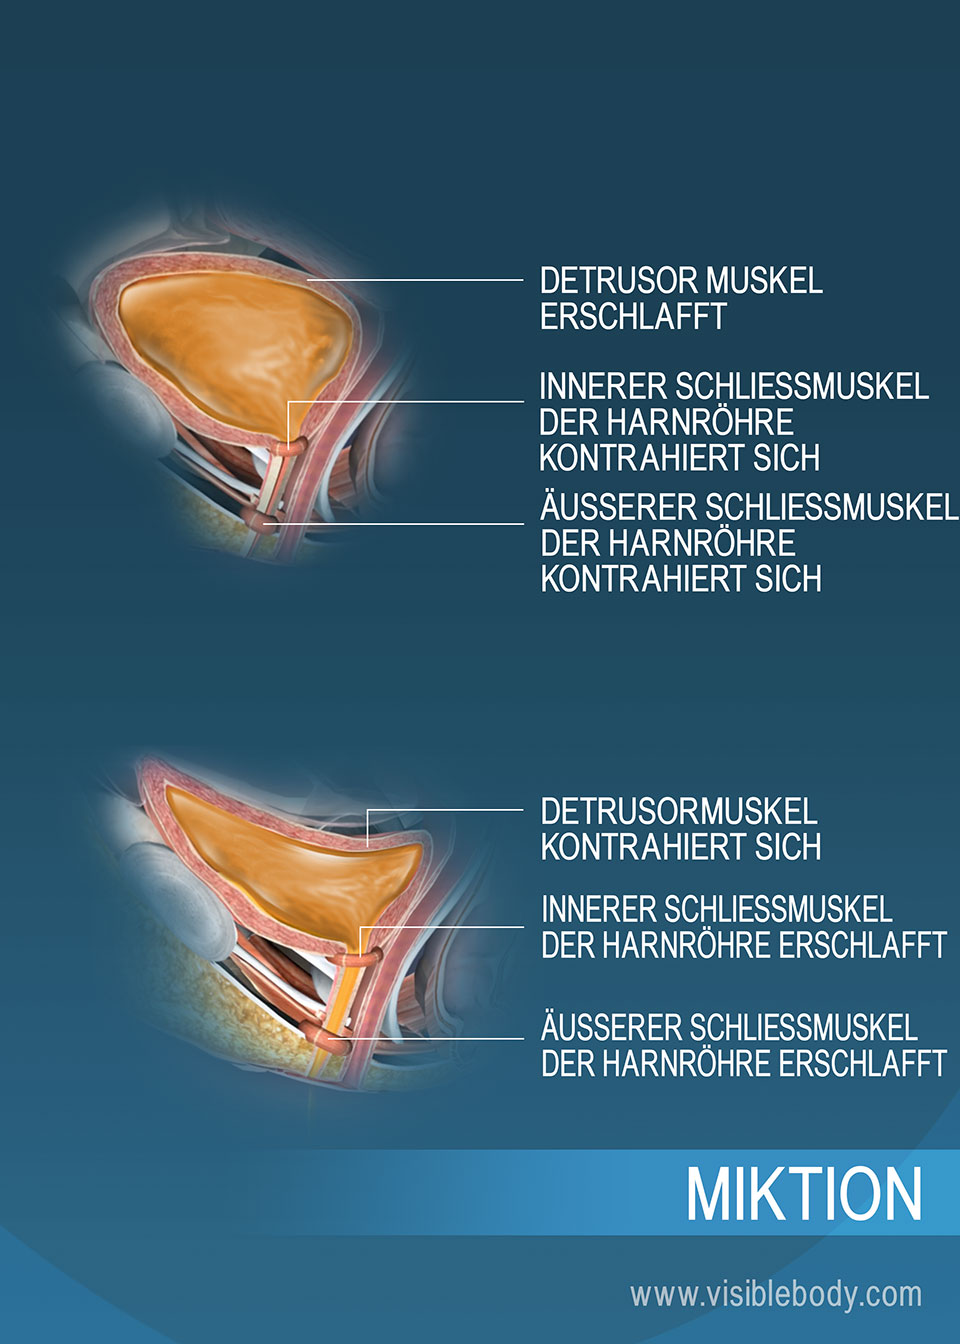 Eine Harnblase mit gesammeltem Urin und eine Harnblase im Zustand der Entleerung – jeweils mit den Harnröhrenschließmuskeln und dem Detrusormuskel, die den Vorgang erleichtern